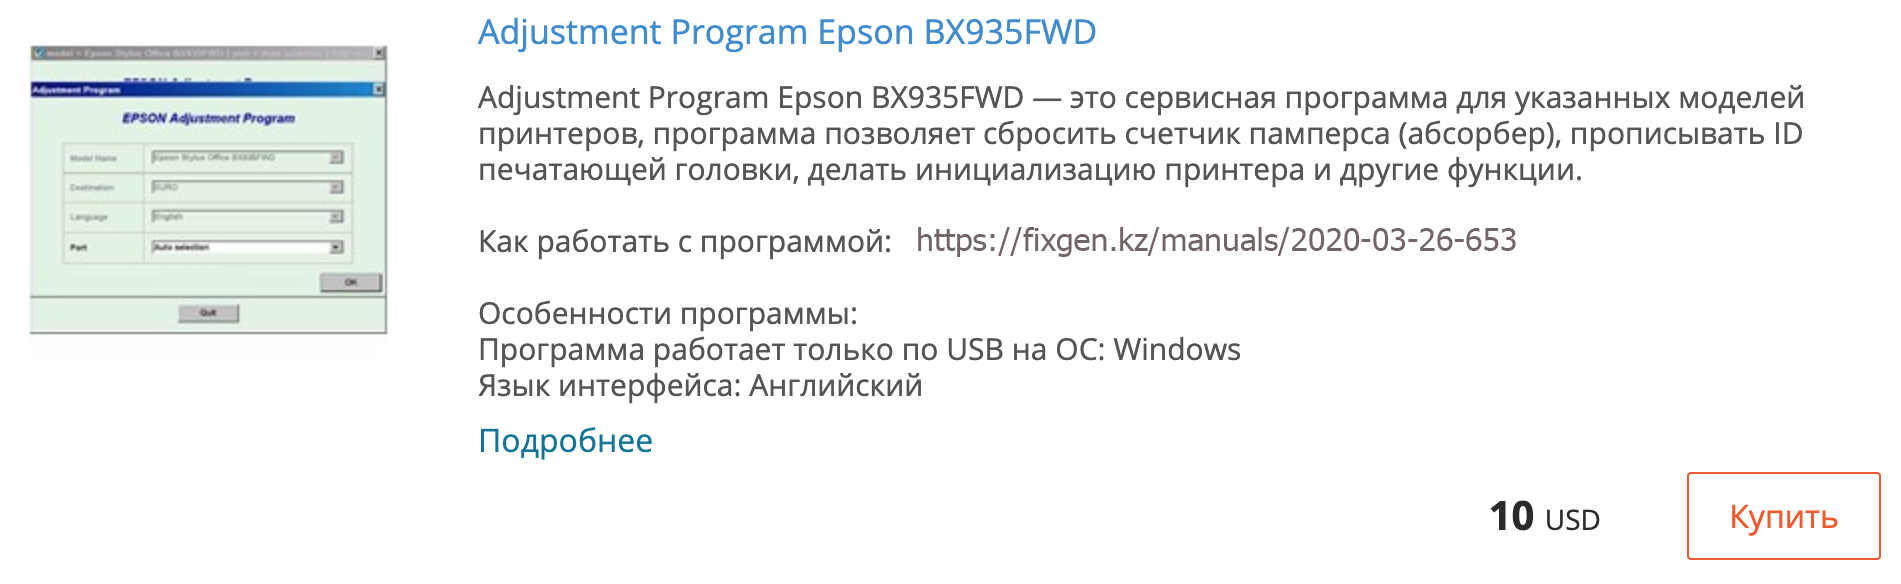 Купить Adjustment program Epson BX935FWD